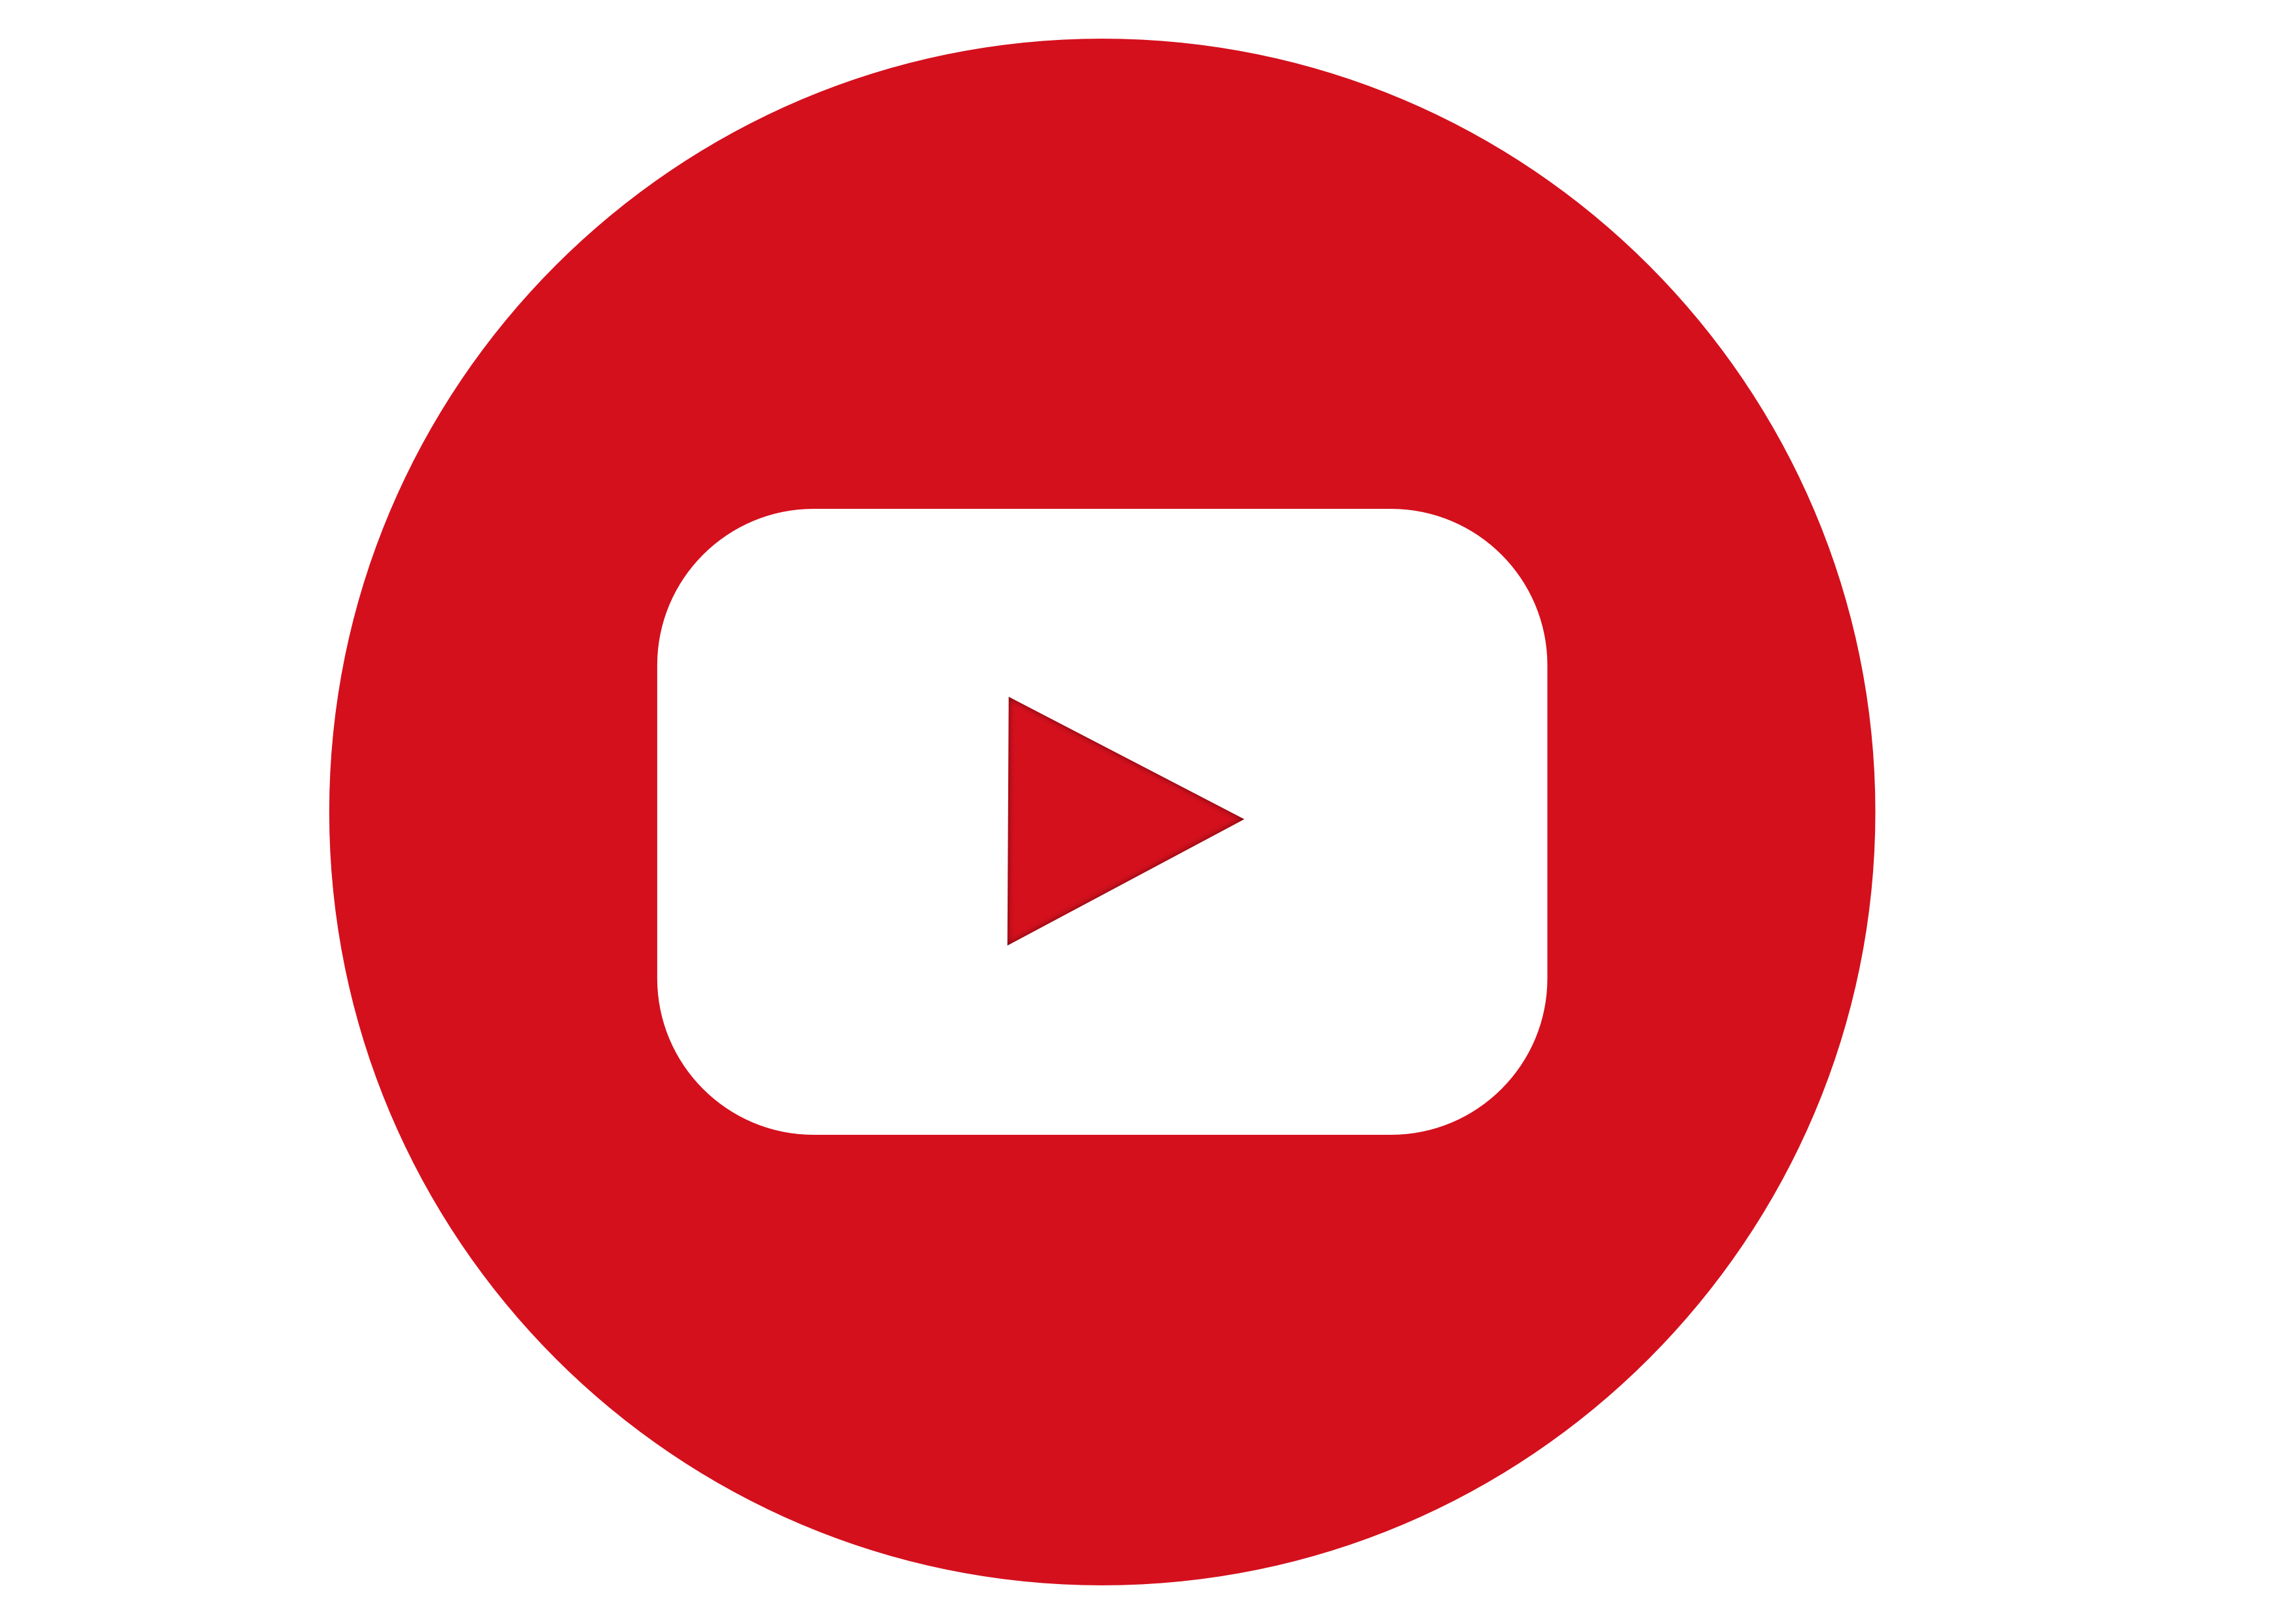 Юту б л. Ютуб лого. Значок ютуб PNG. Логотип youtube на белом фоне. Ютуб лого без фона.